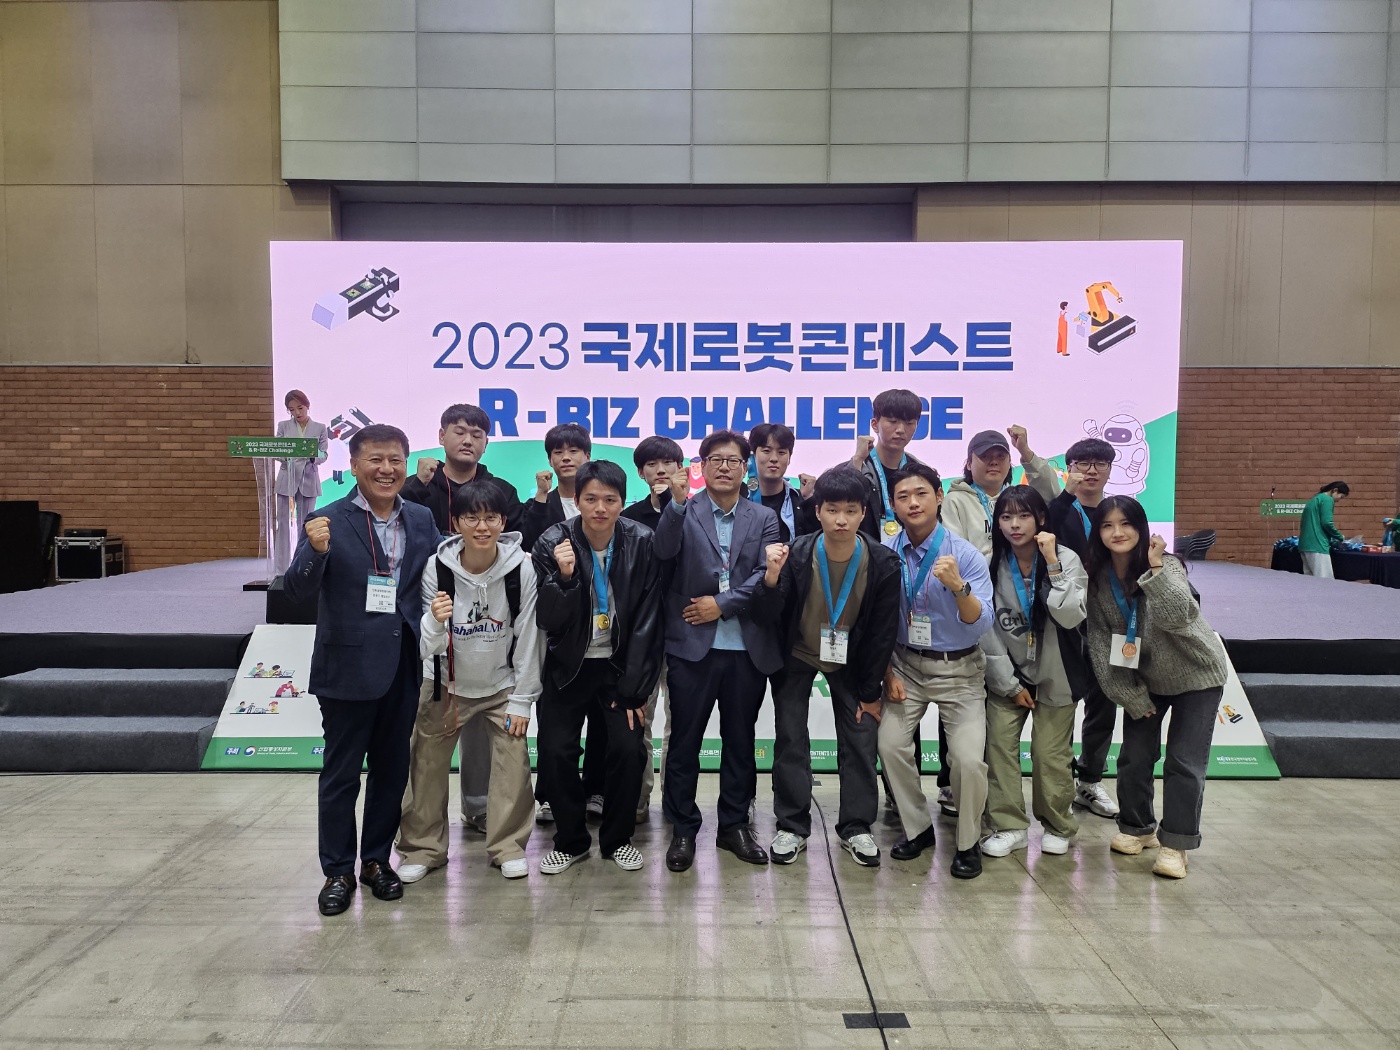 2023 국제로봇콘테스트 (International Robot Contest) 대표이미지